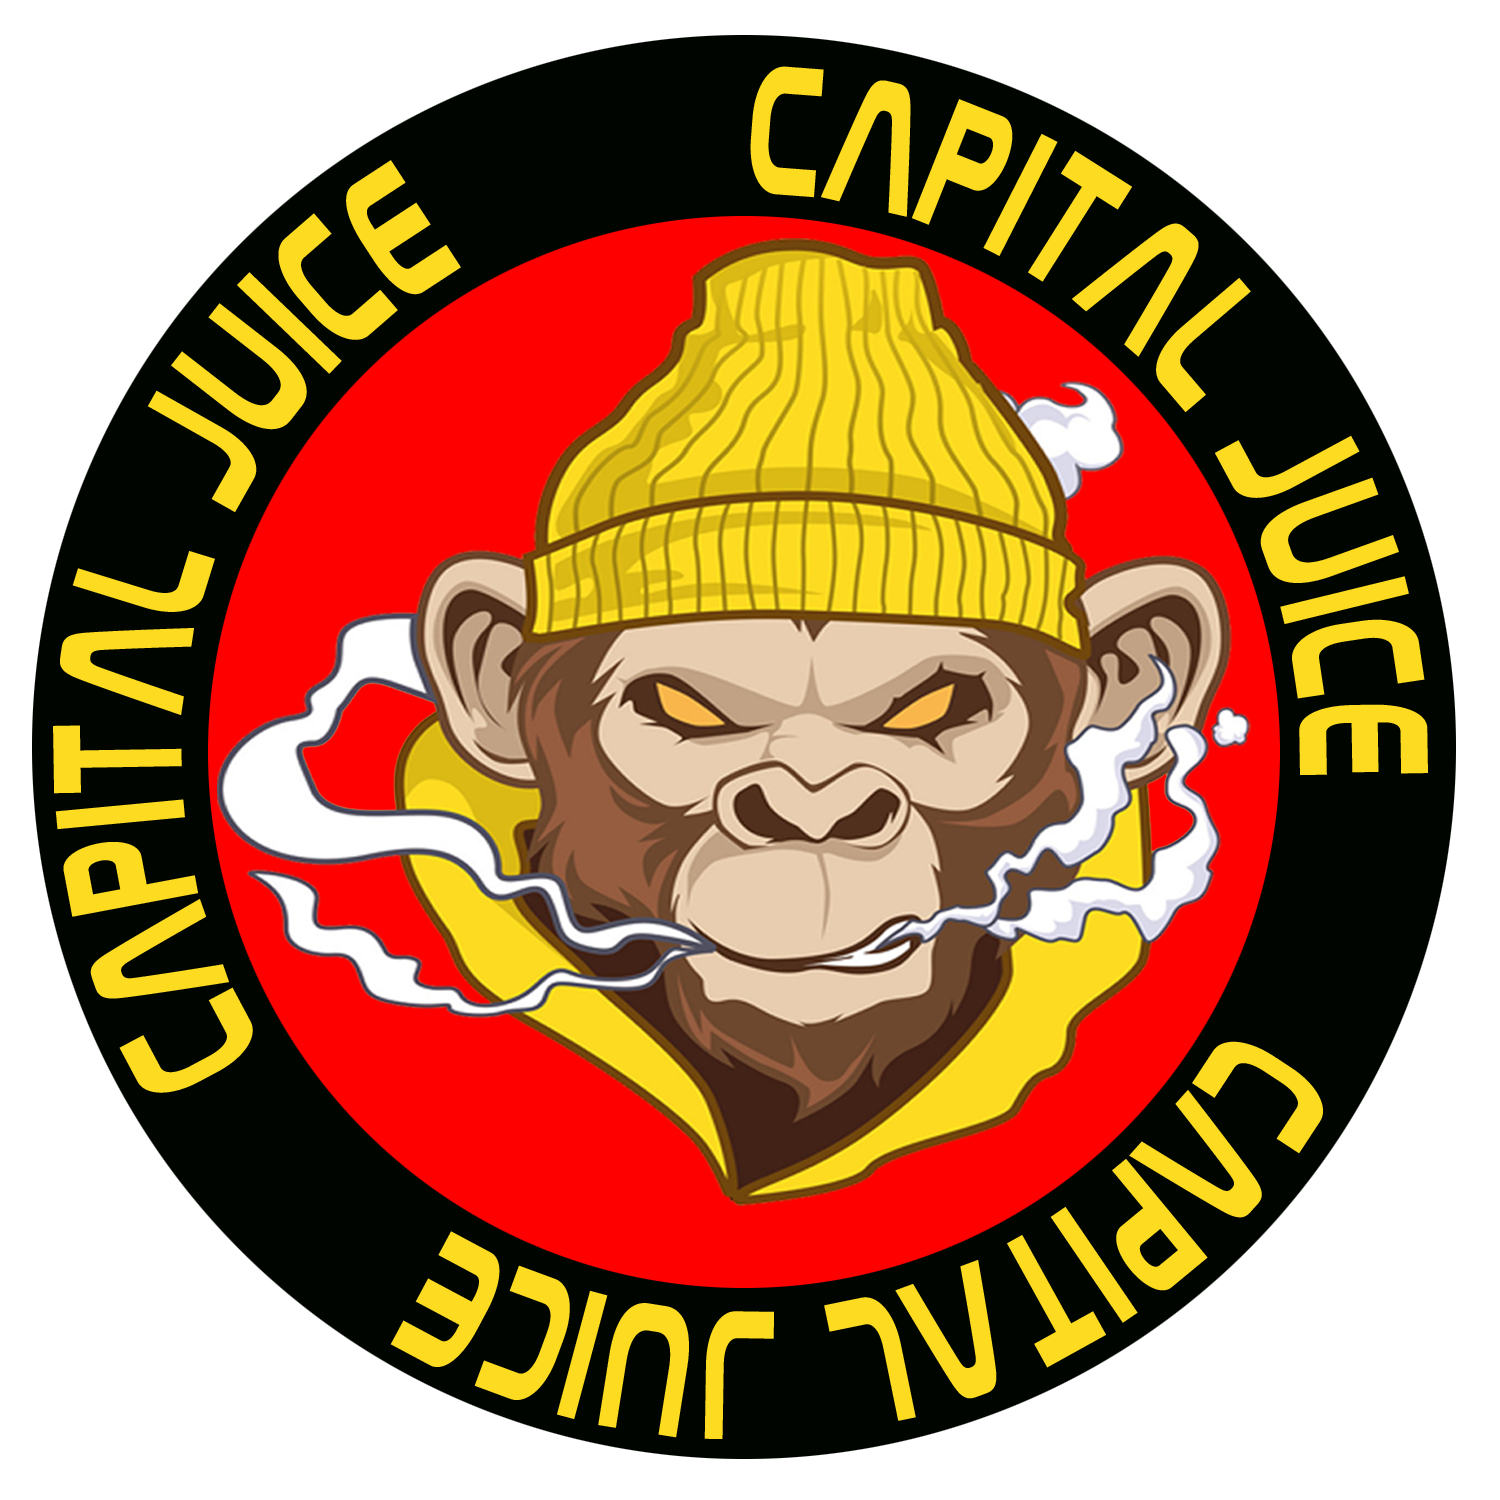 Capital Juice